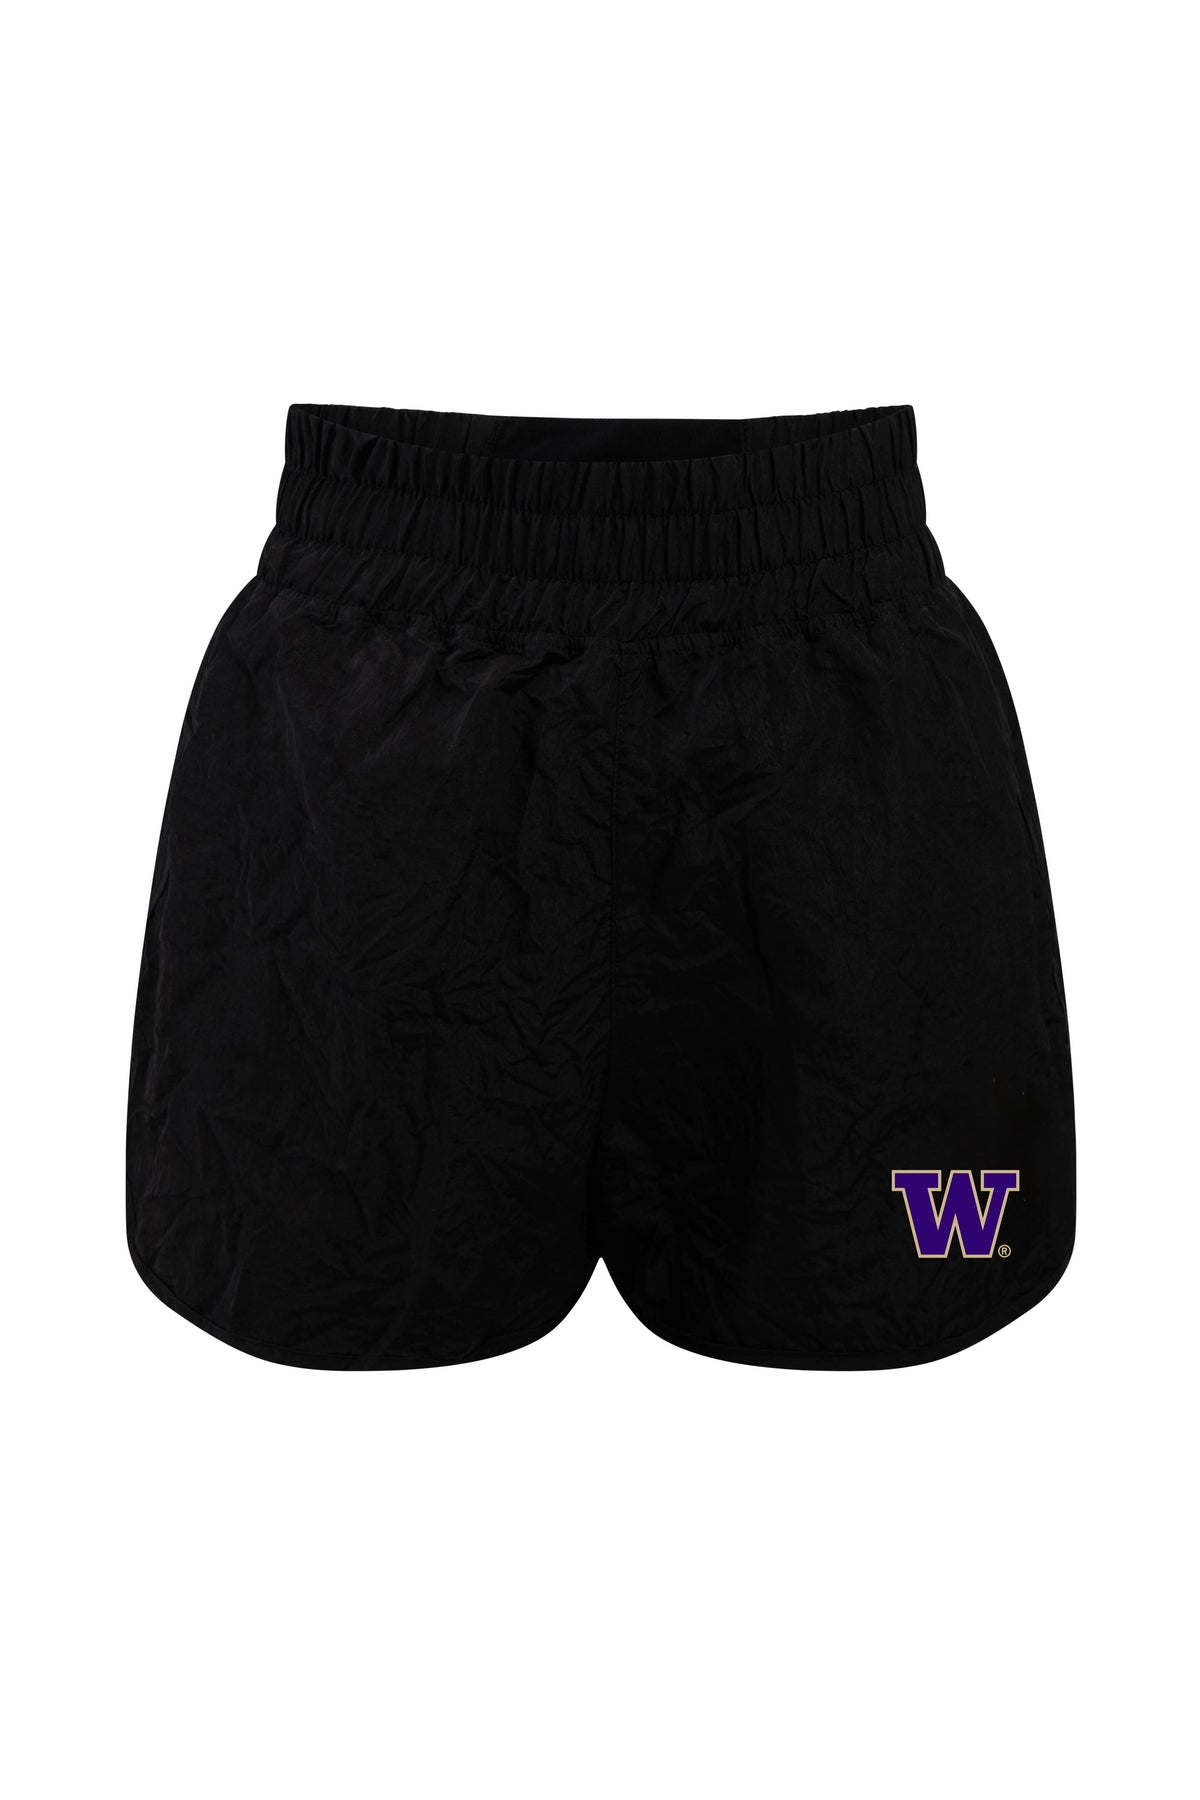 University of Washington Boxer Short